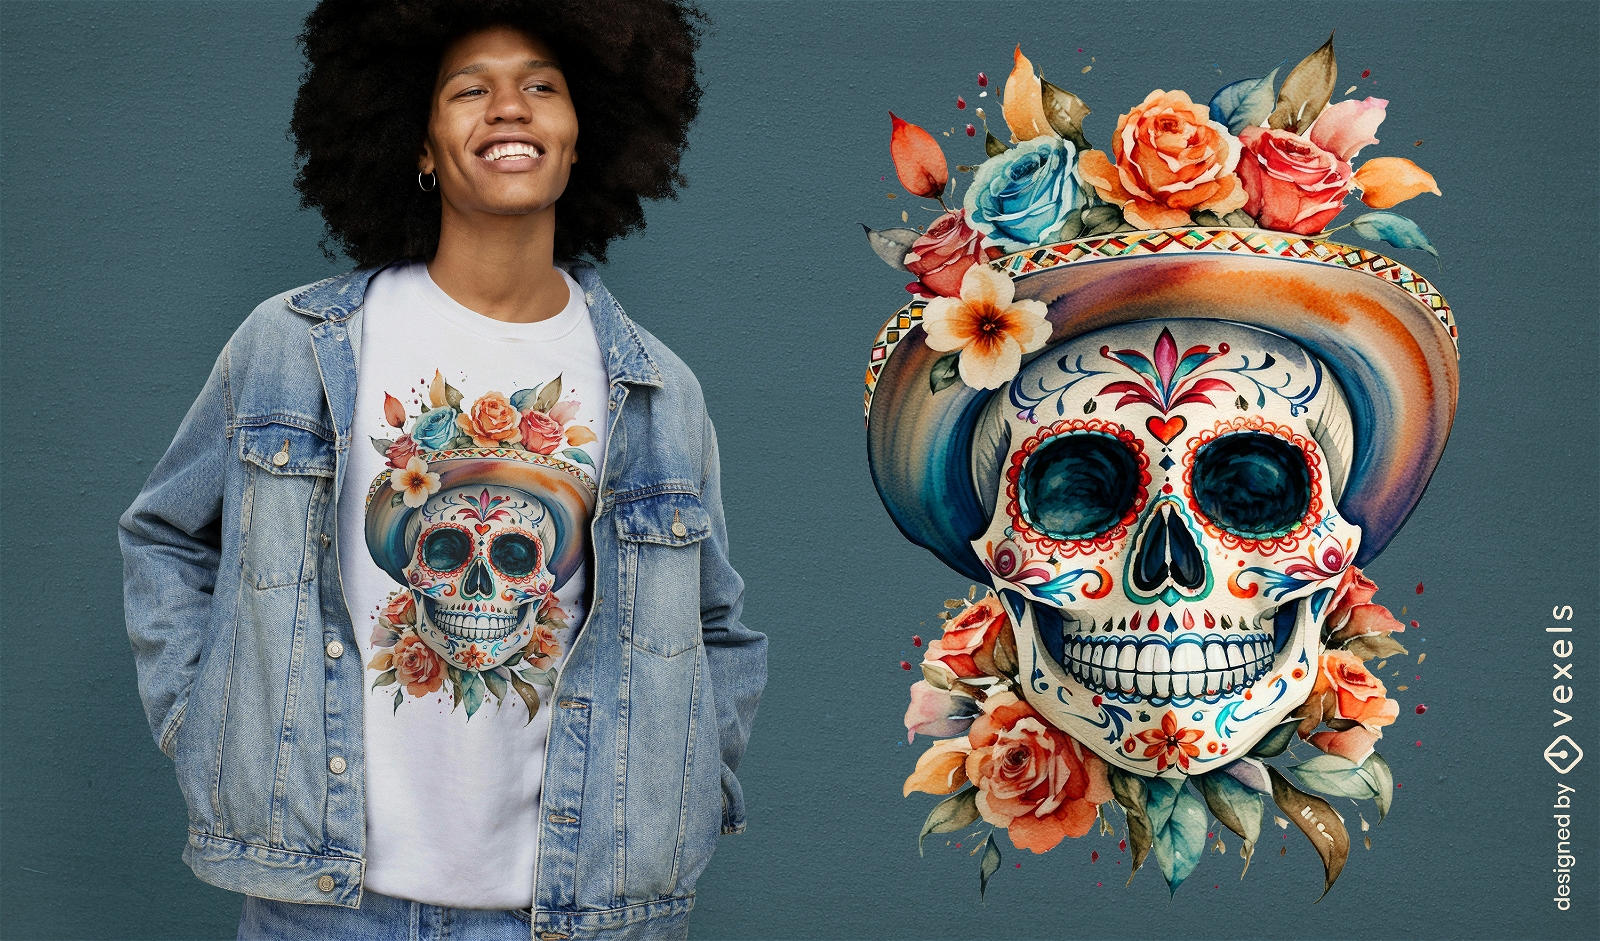 Pastel flower skull t-shirt design